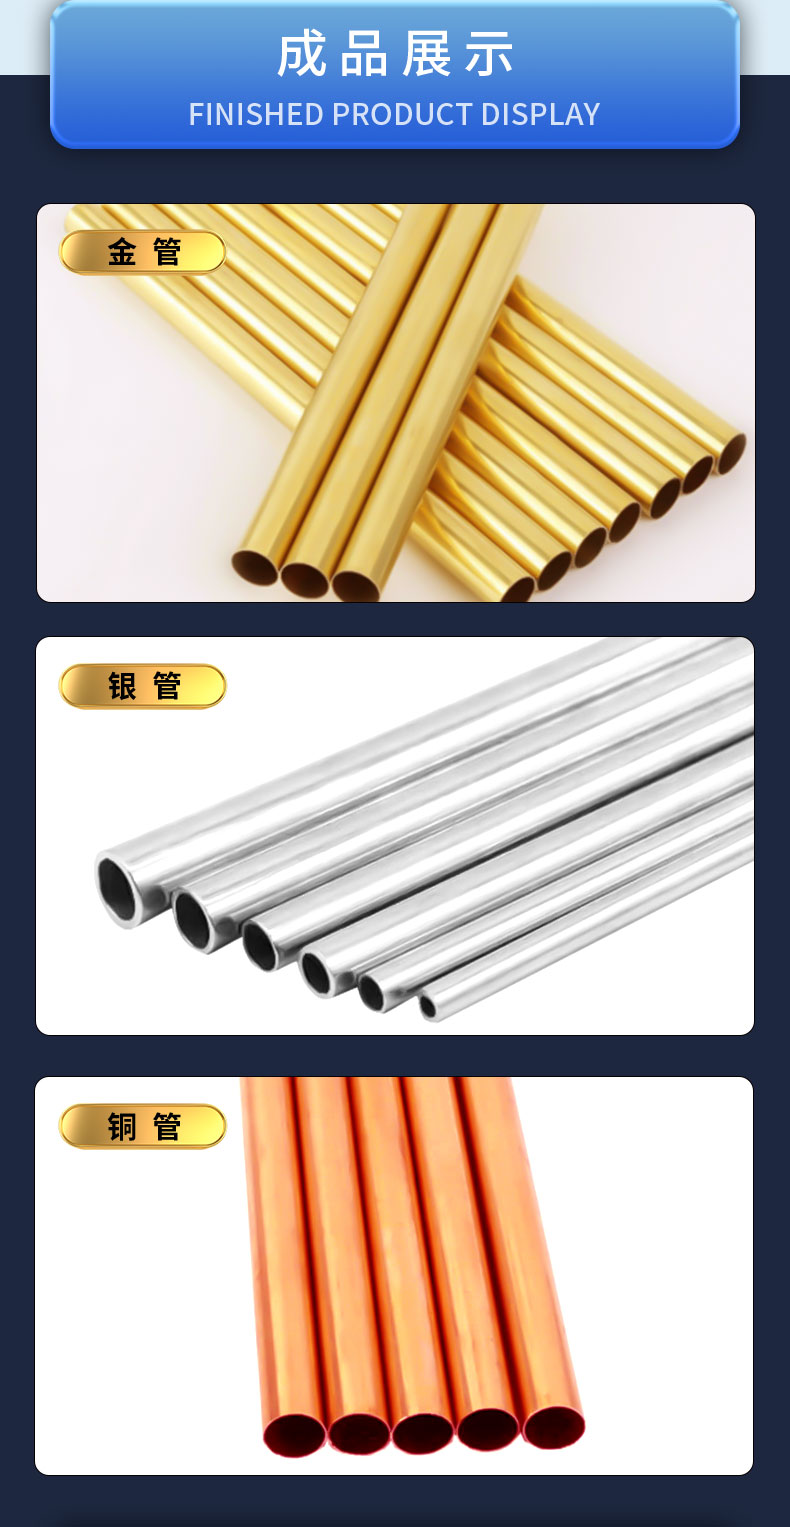 金银贵金属拉管机适用材料及生产产品展示